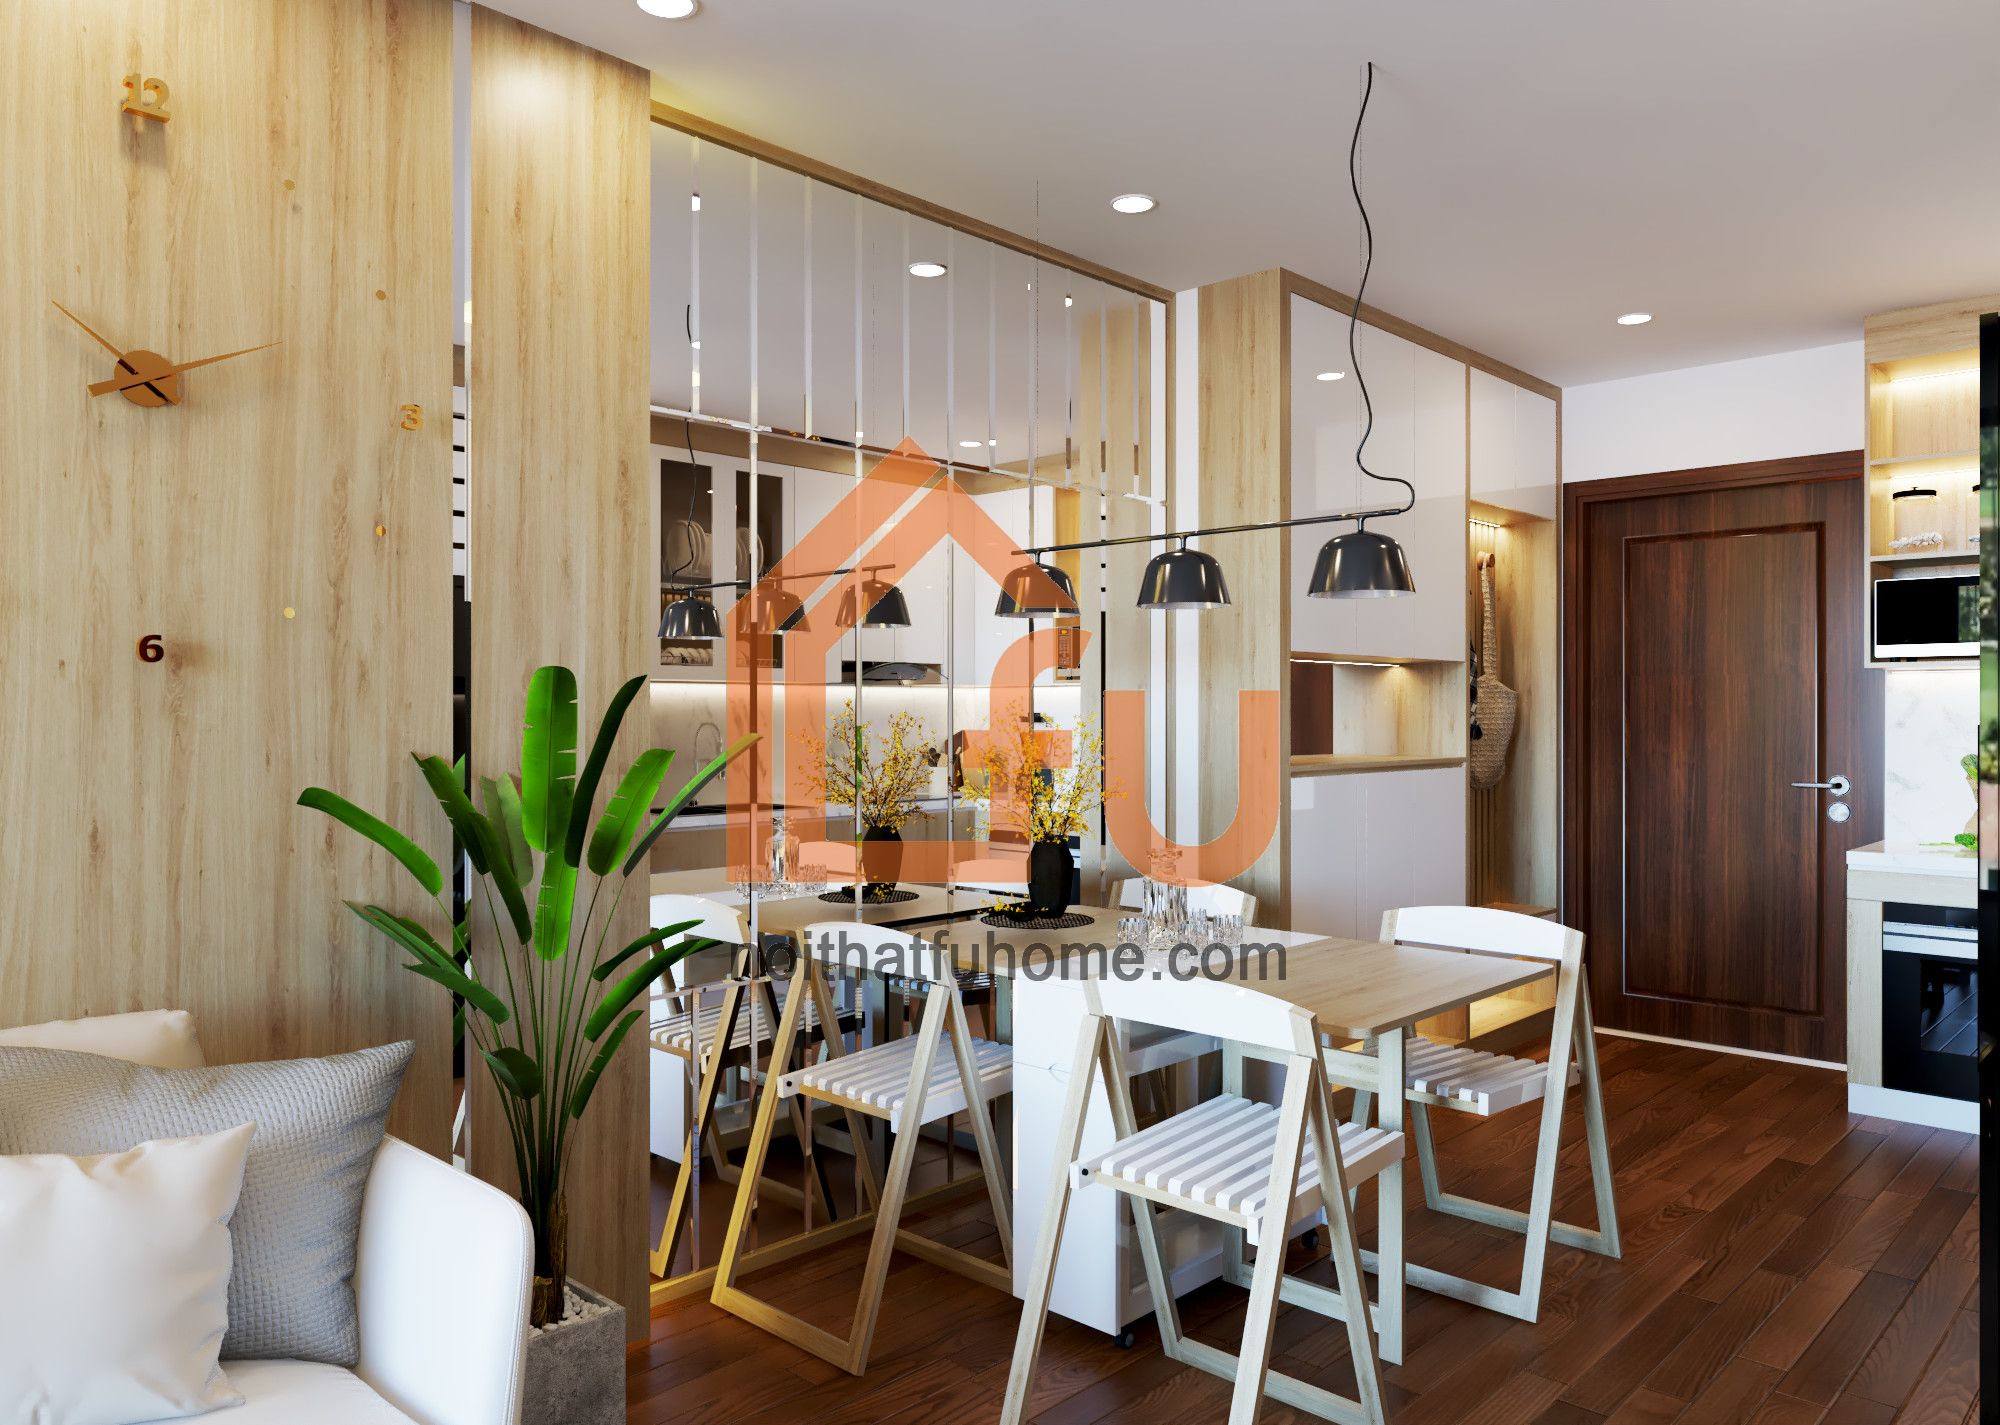 Thiết kế nội thất chung cư giá rẻ – Tiết kiệm mà vẫn đủ công năng cần thiết